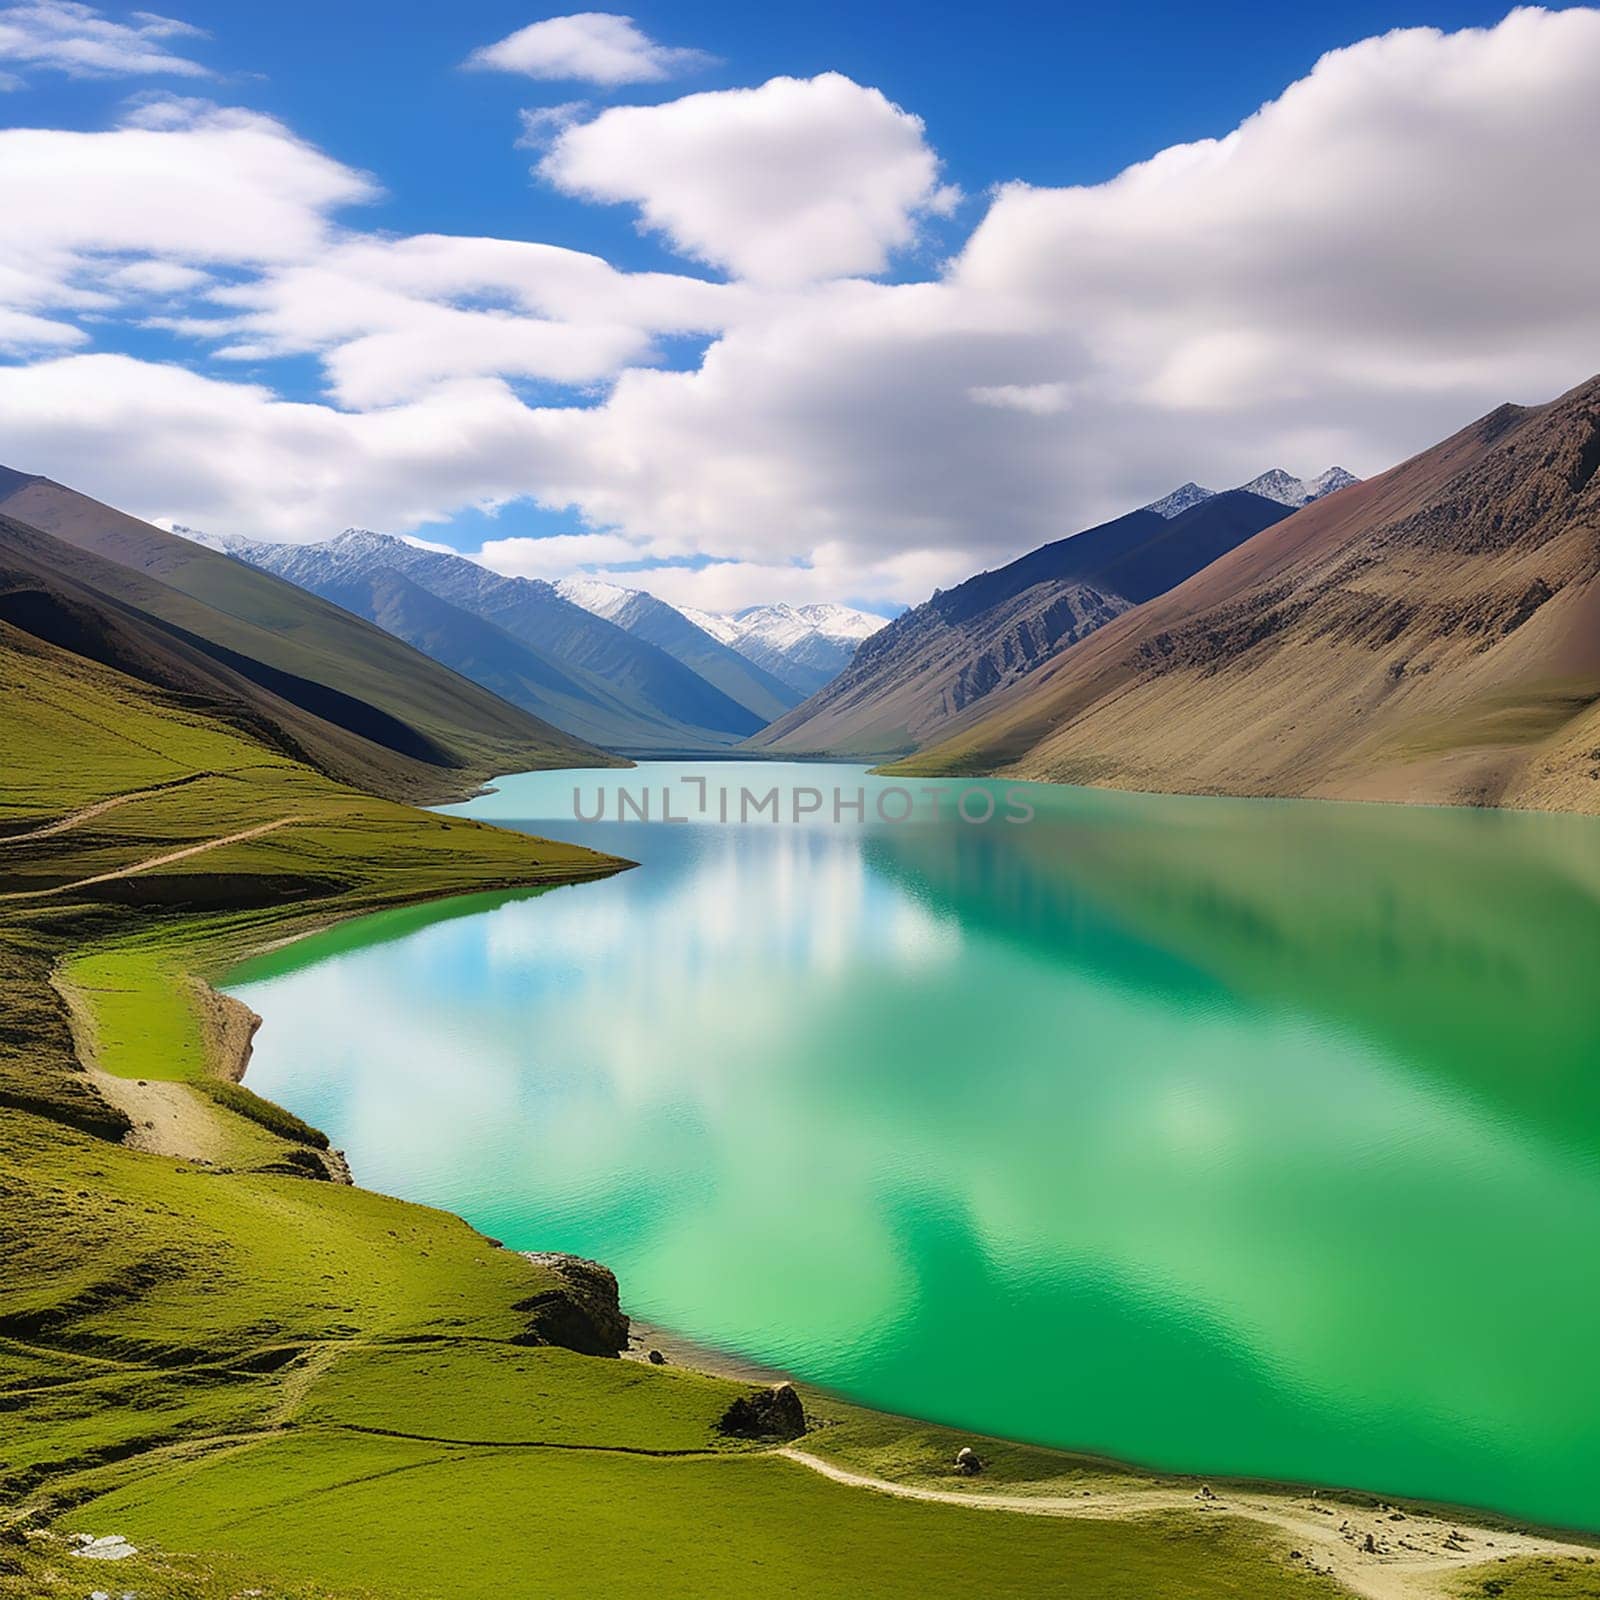 Jewel of the Himalayas Yamdrok Tso Lake by Petrichor